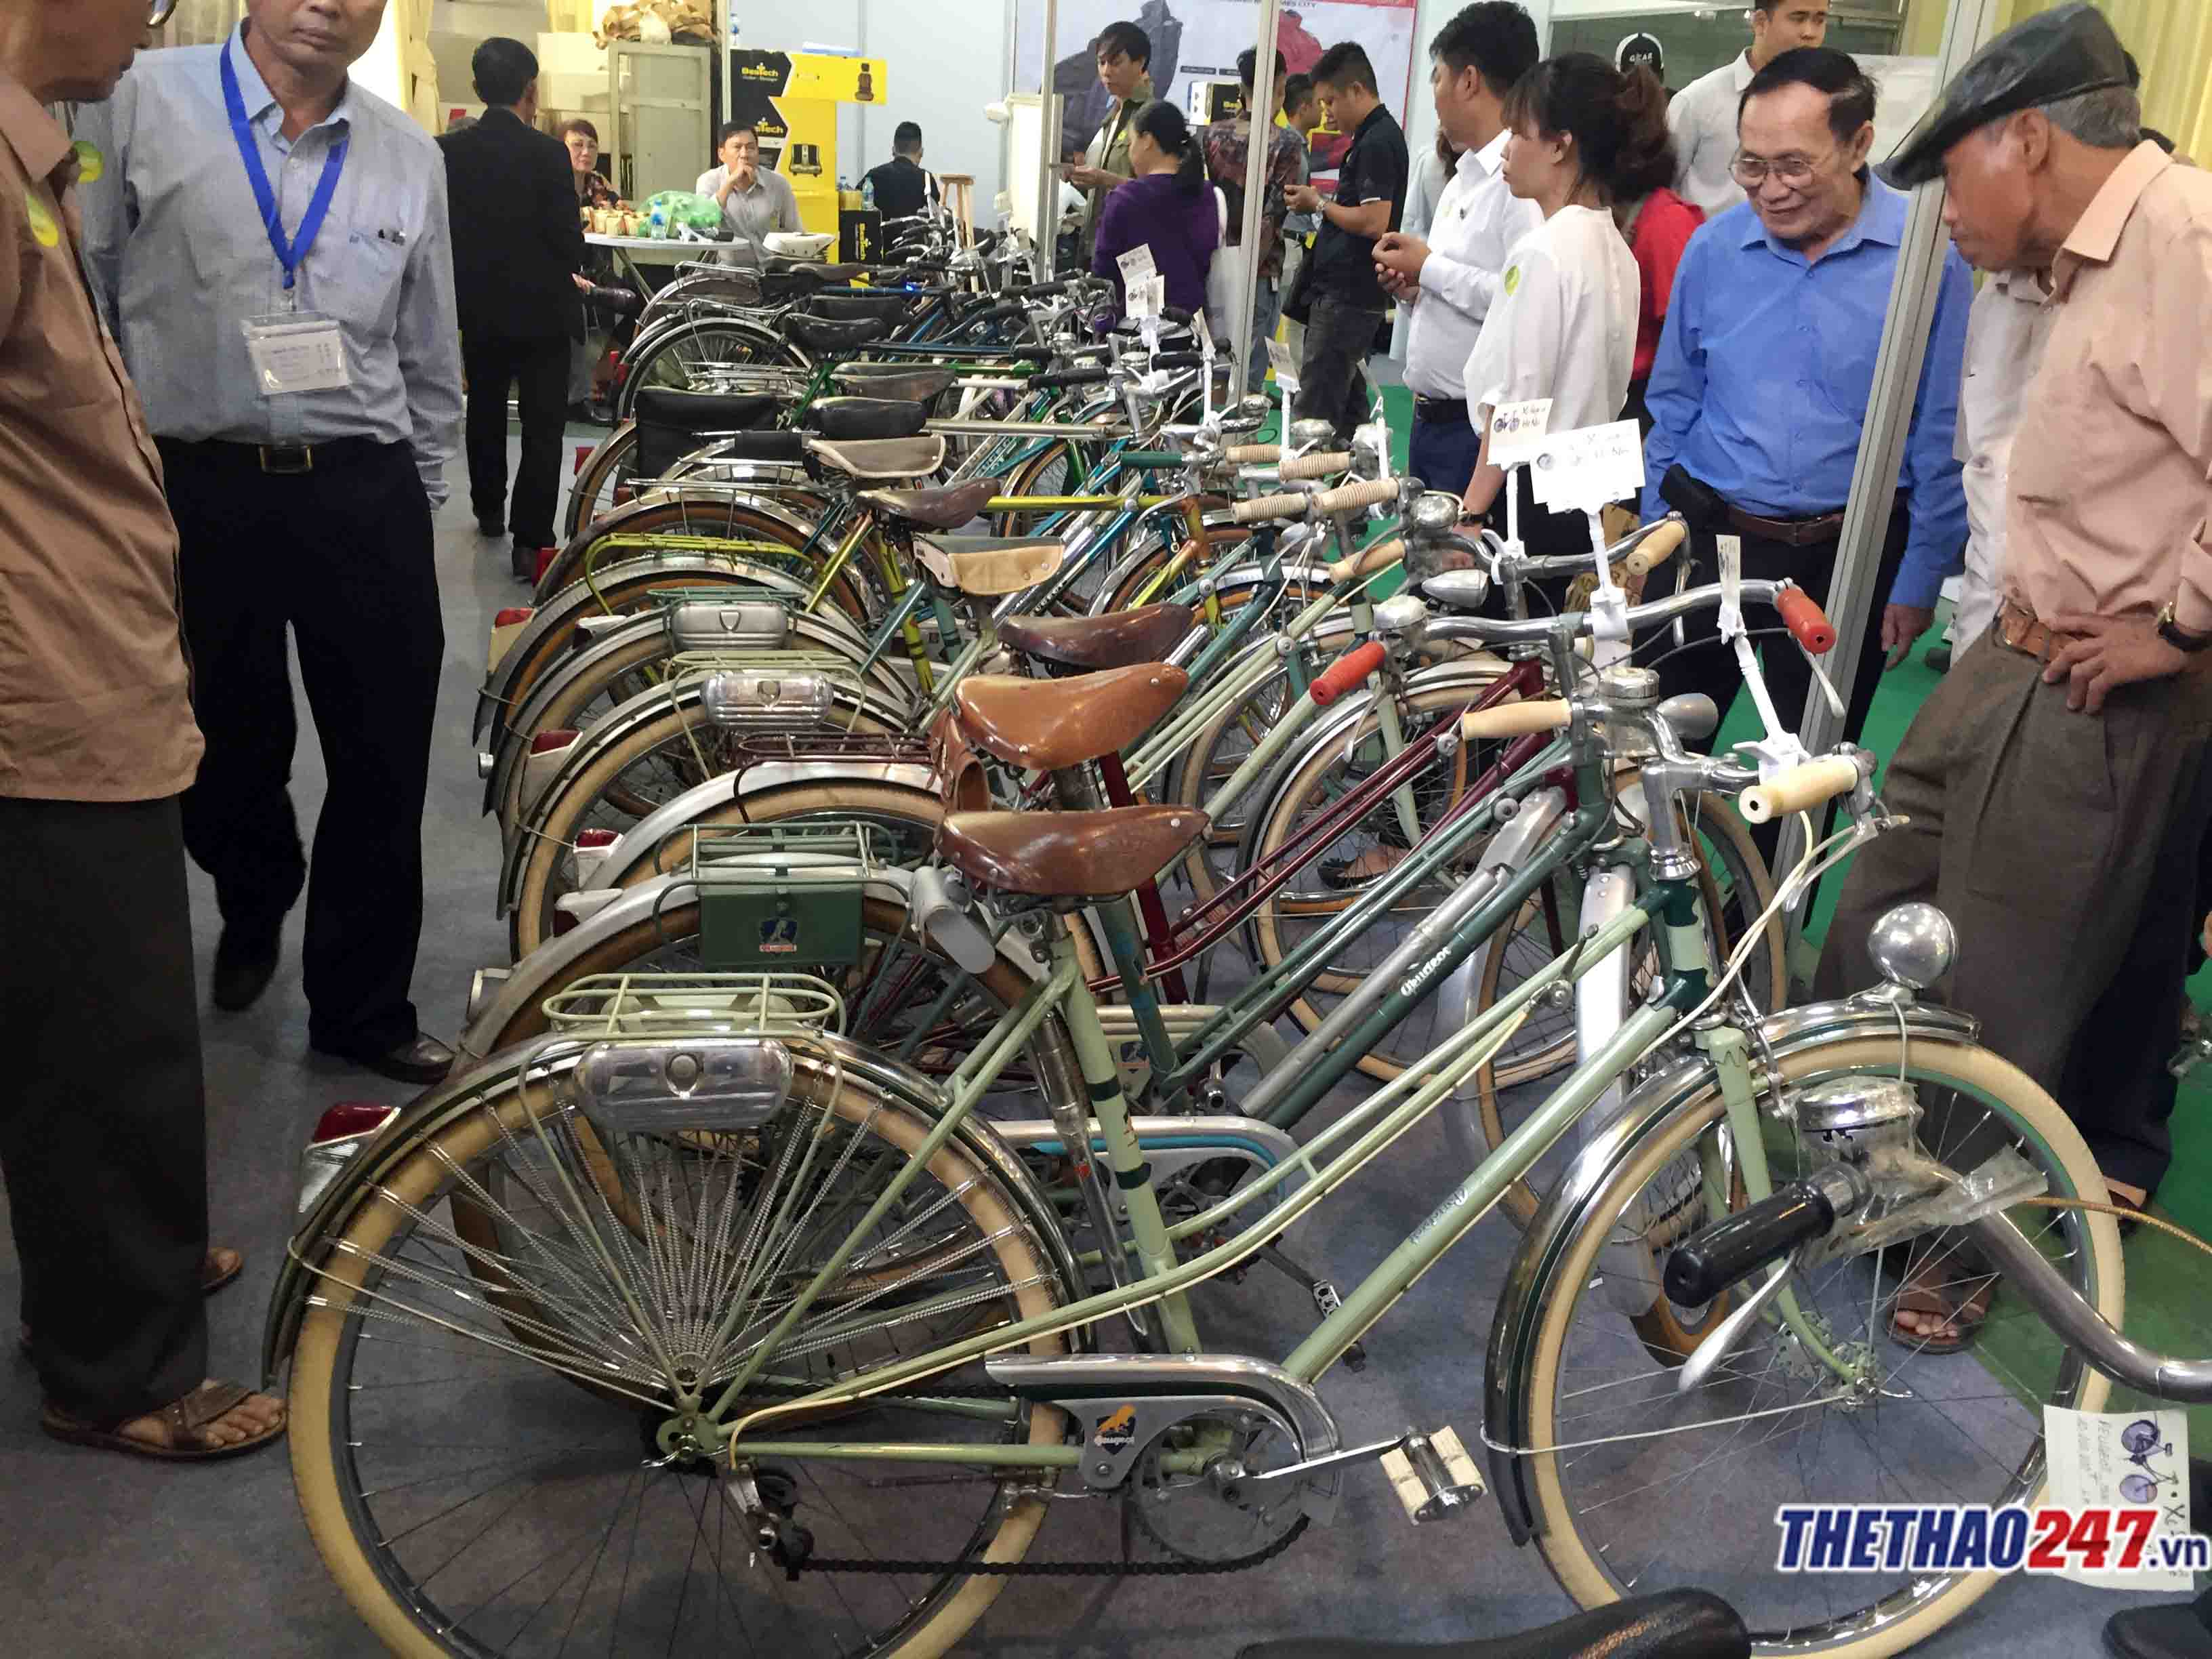 Ngắm dàn xe đạp cổ độc đáo tại Vietnam Cycle 2018